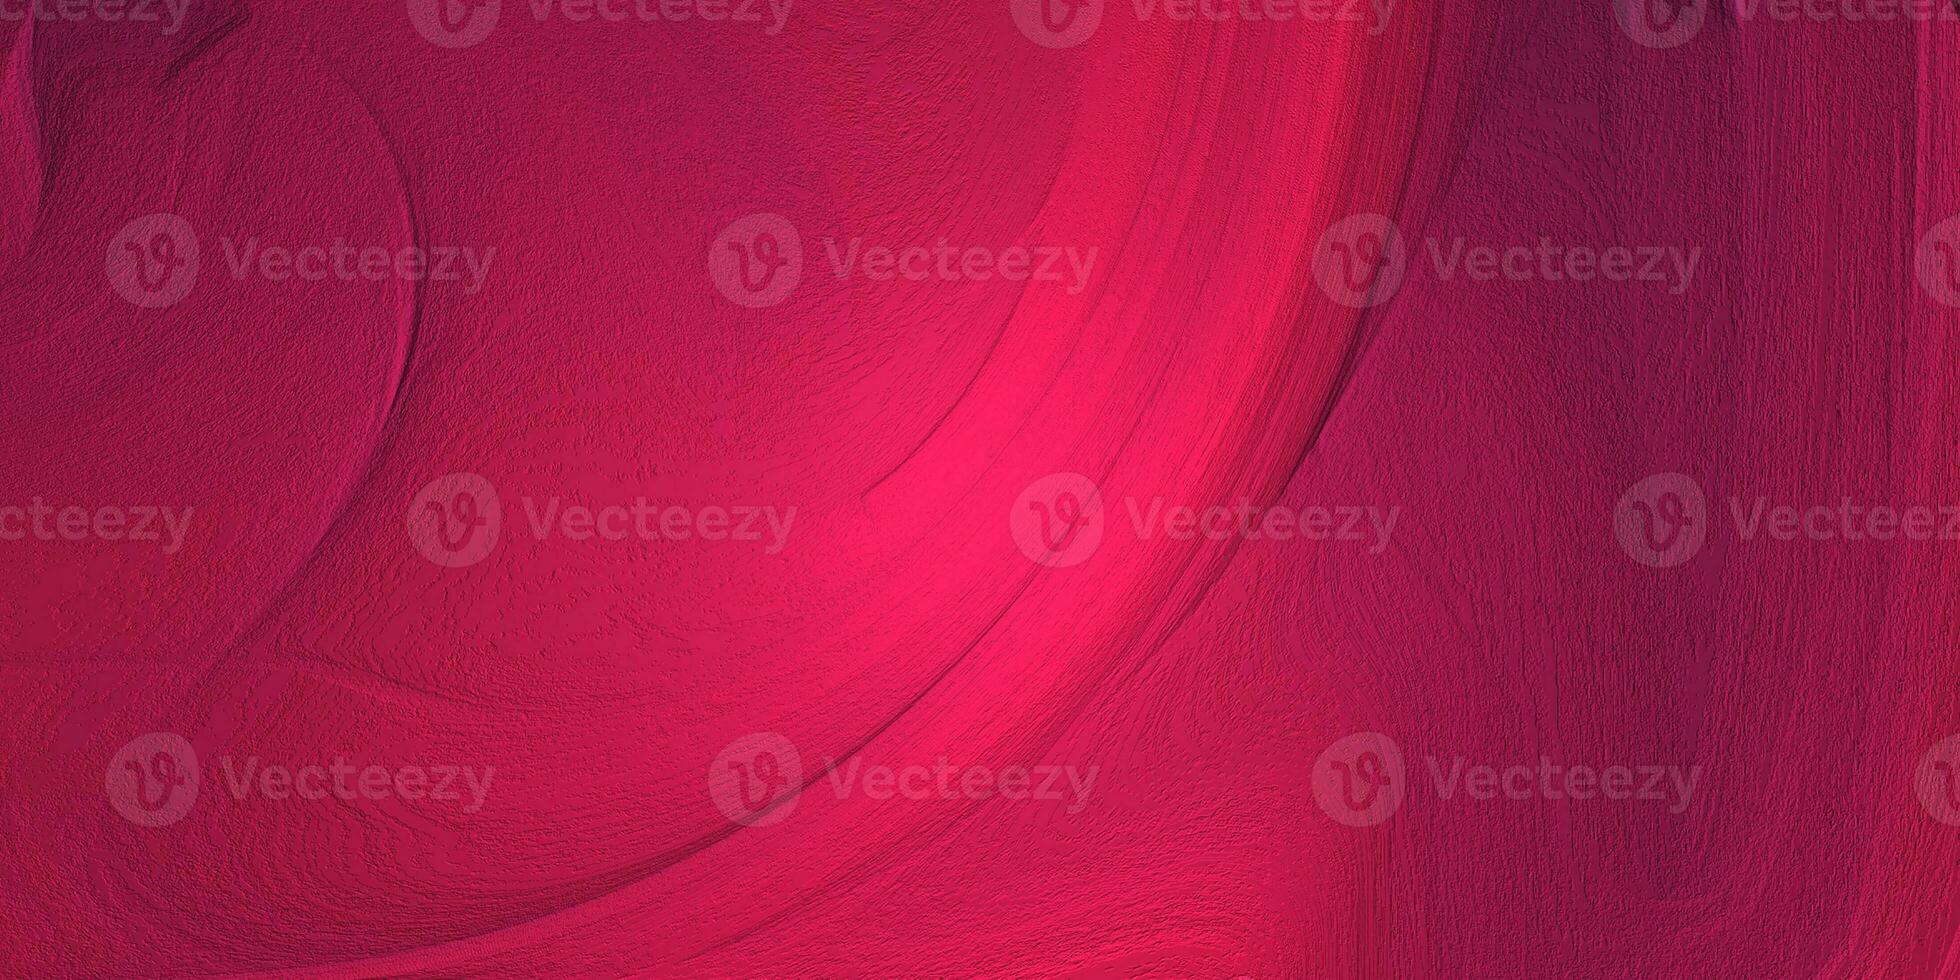 rosa wand abstrakter hintergrund hochwertige texturdetails foto